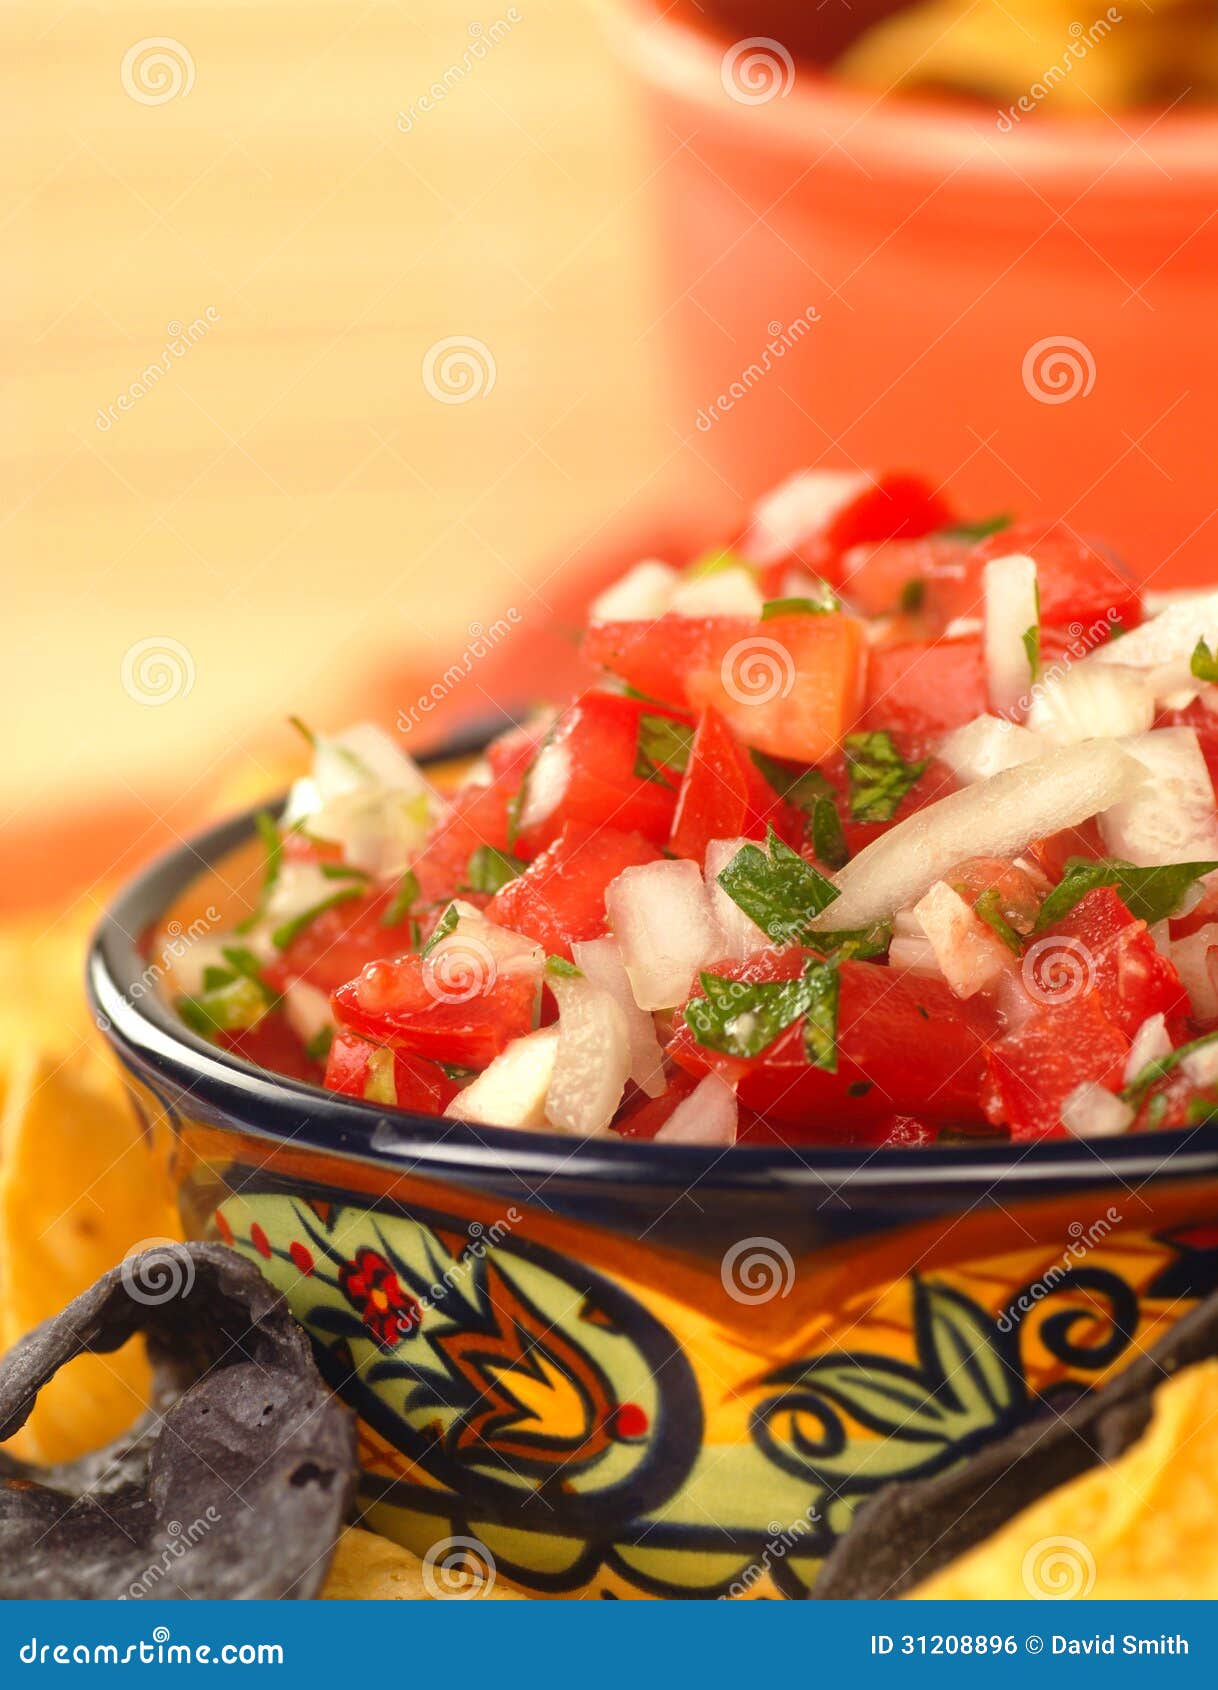 delicious fresh pico de gallo salsa and chips